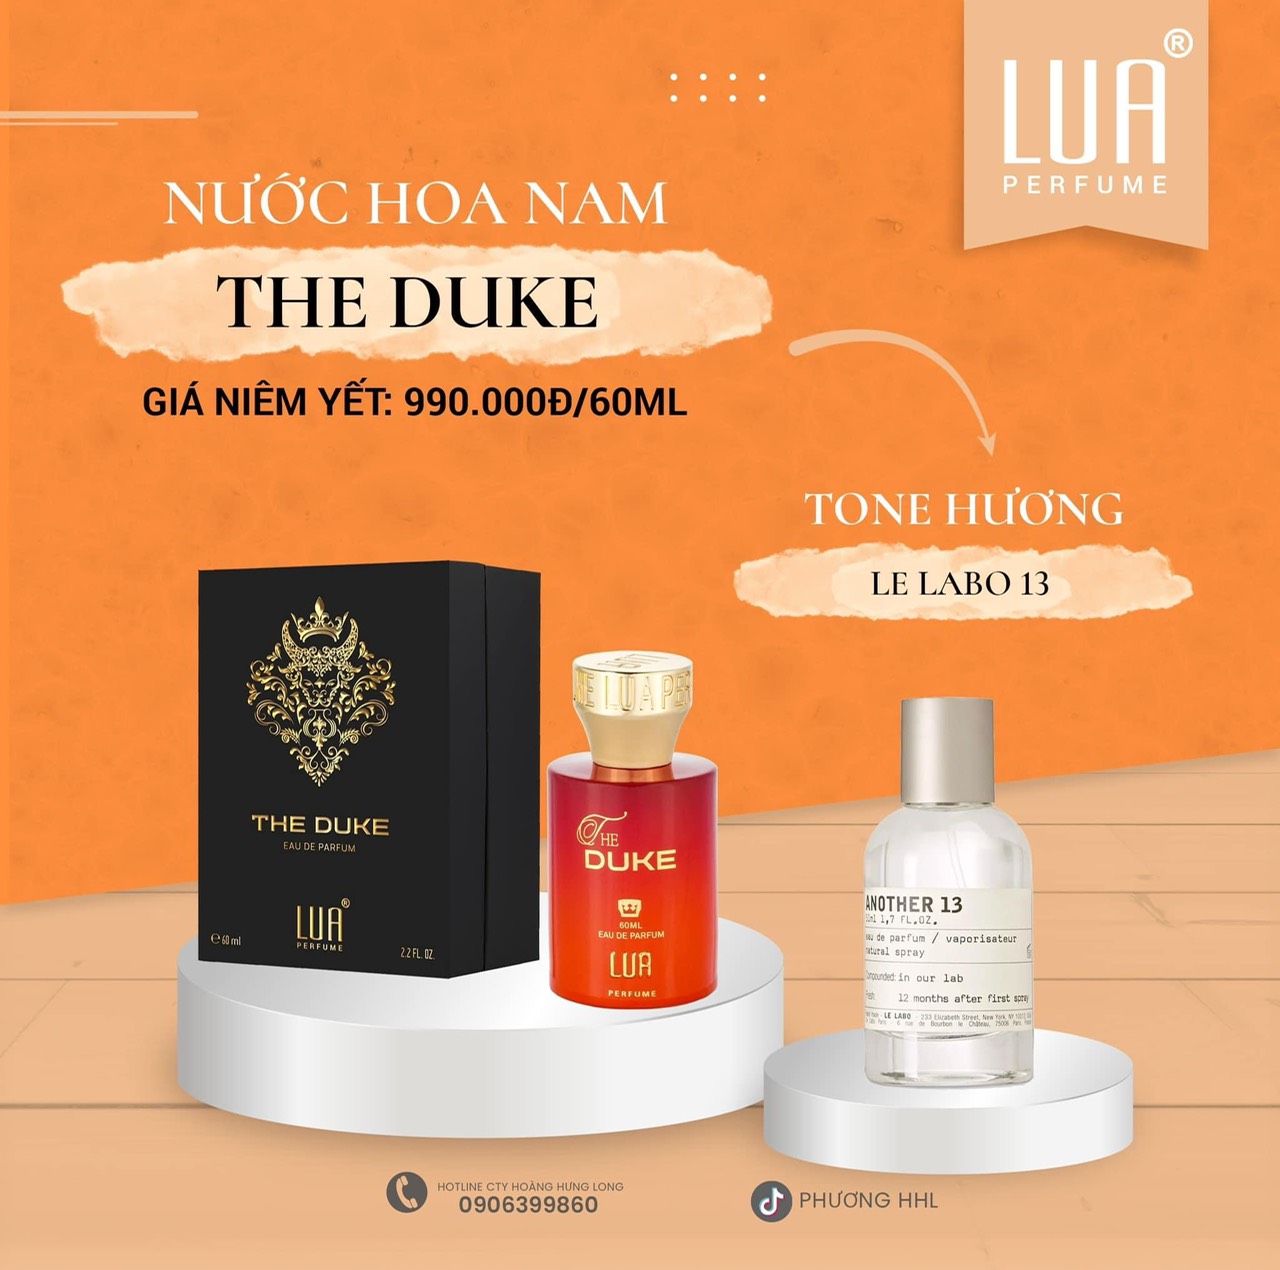 Tổng hợp mùi new best mới nhất ạ Lua Perfume